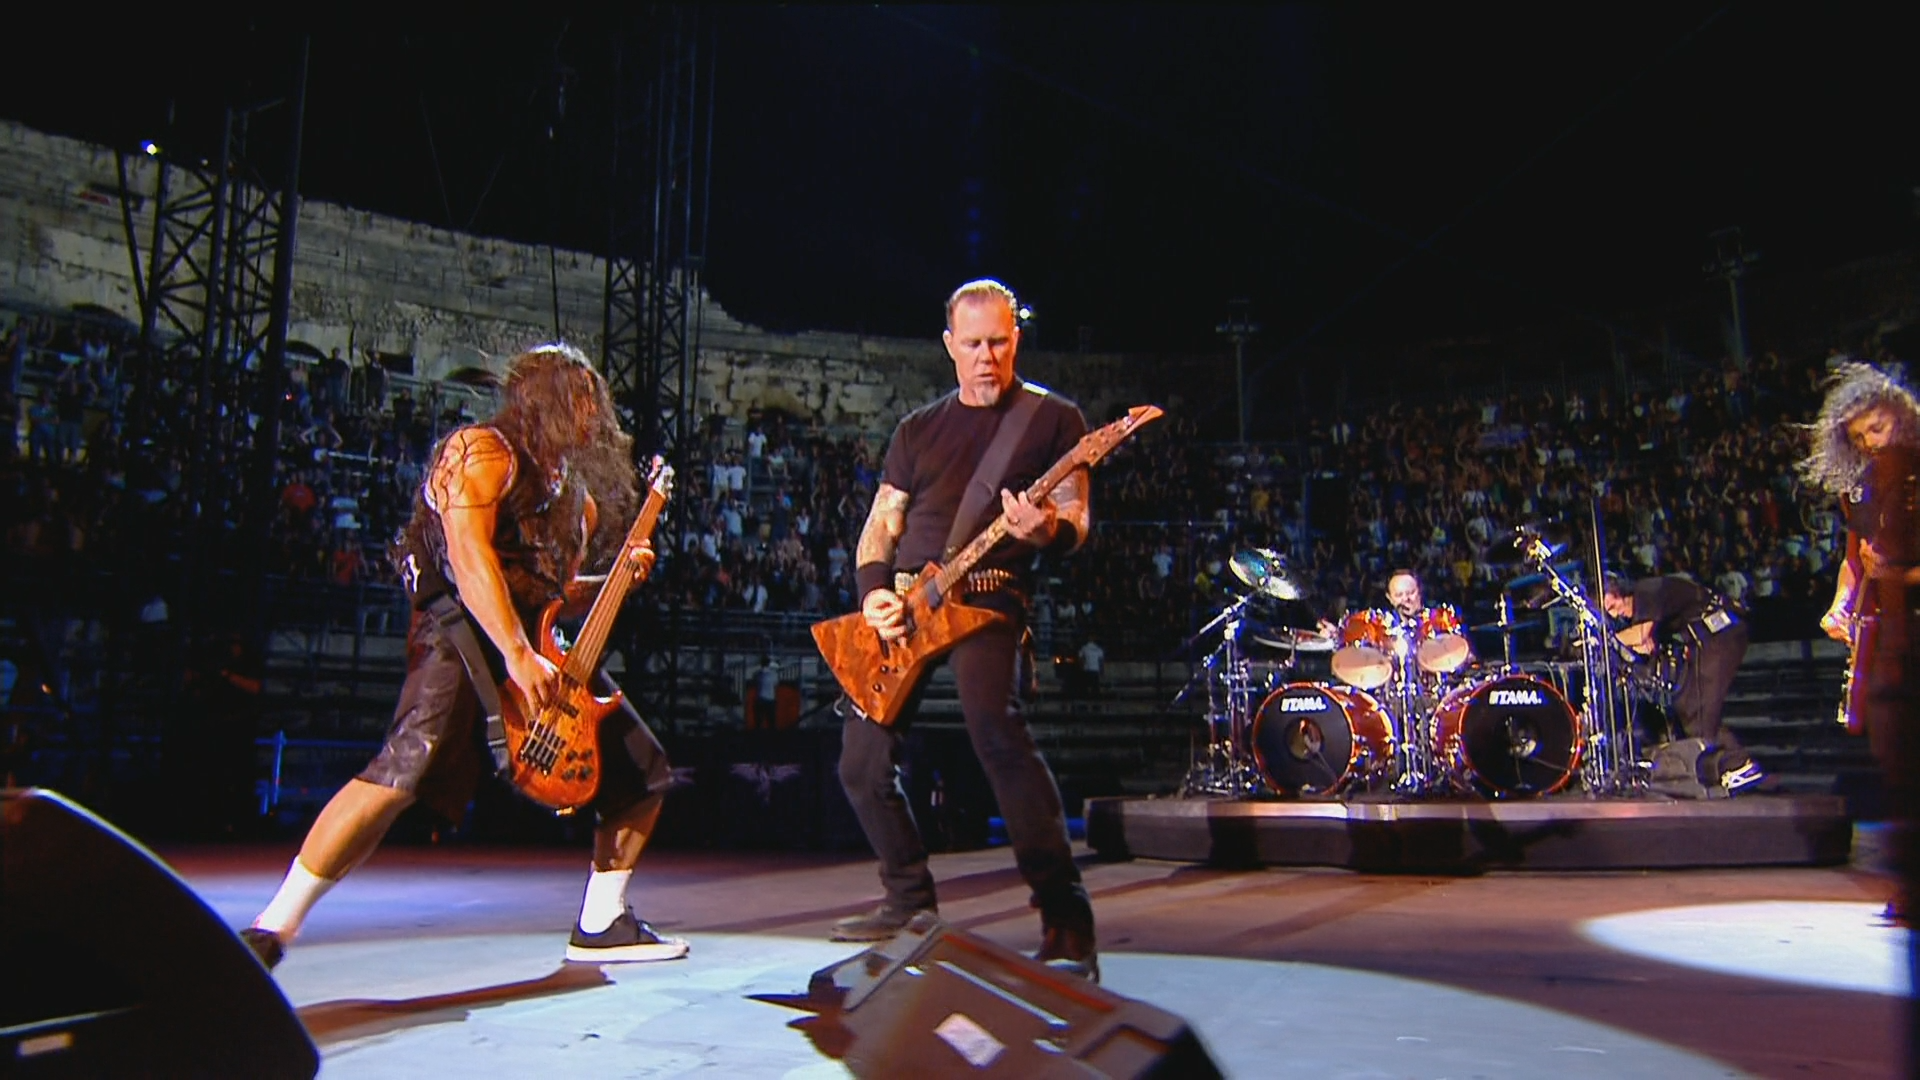 Metallica.Francais.pour.une.nuit.2009.1080p.BluRay.DTS.FLAC.x264.HDCLUB-SbR.mkv_snapshot_01.17.39_[2